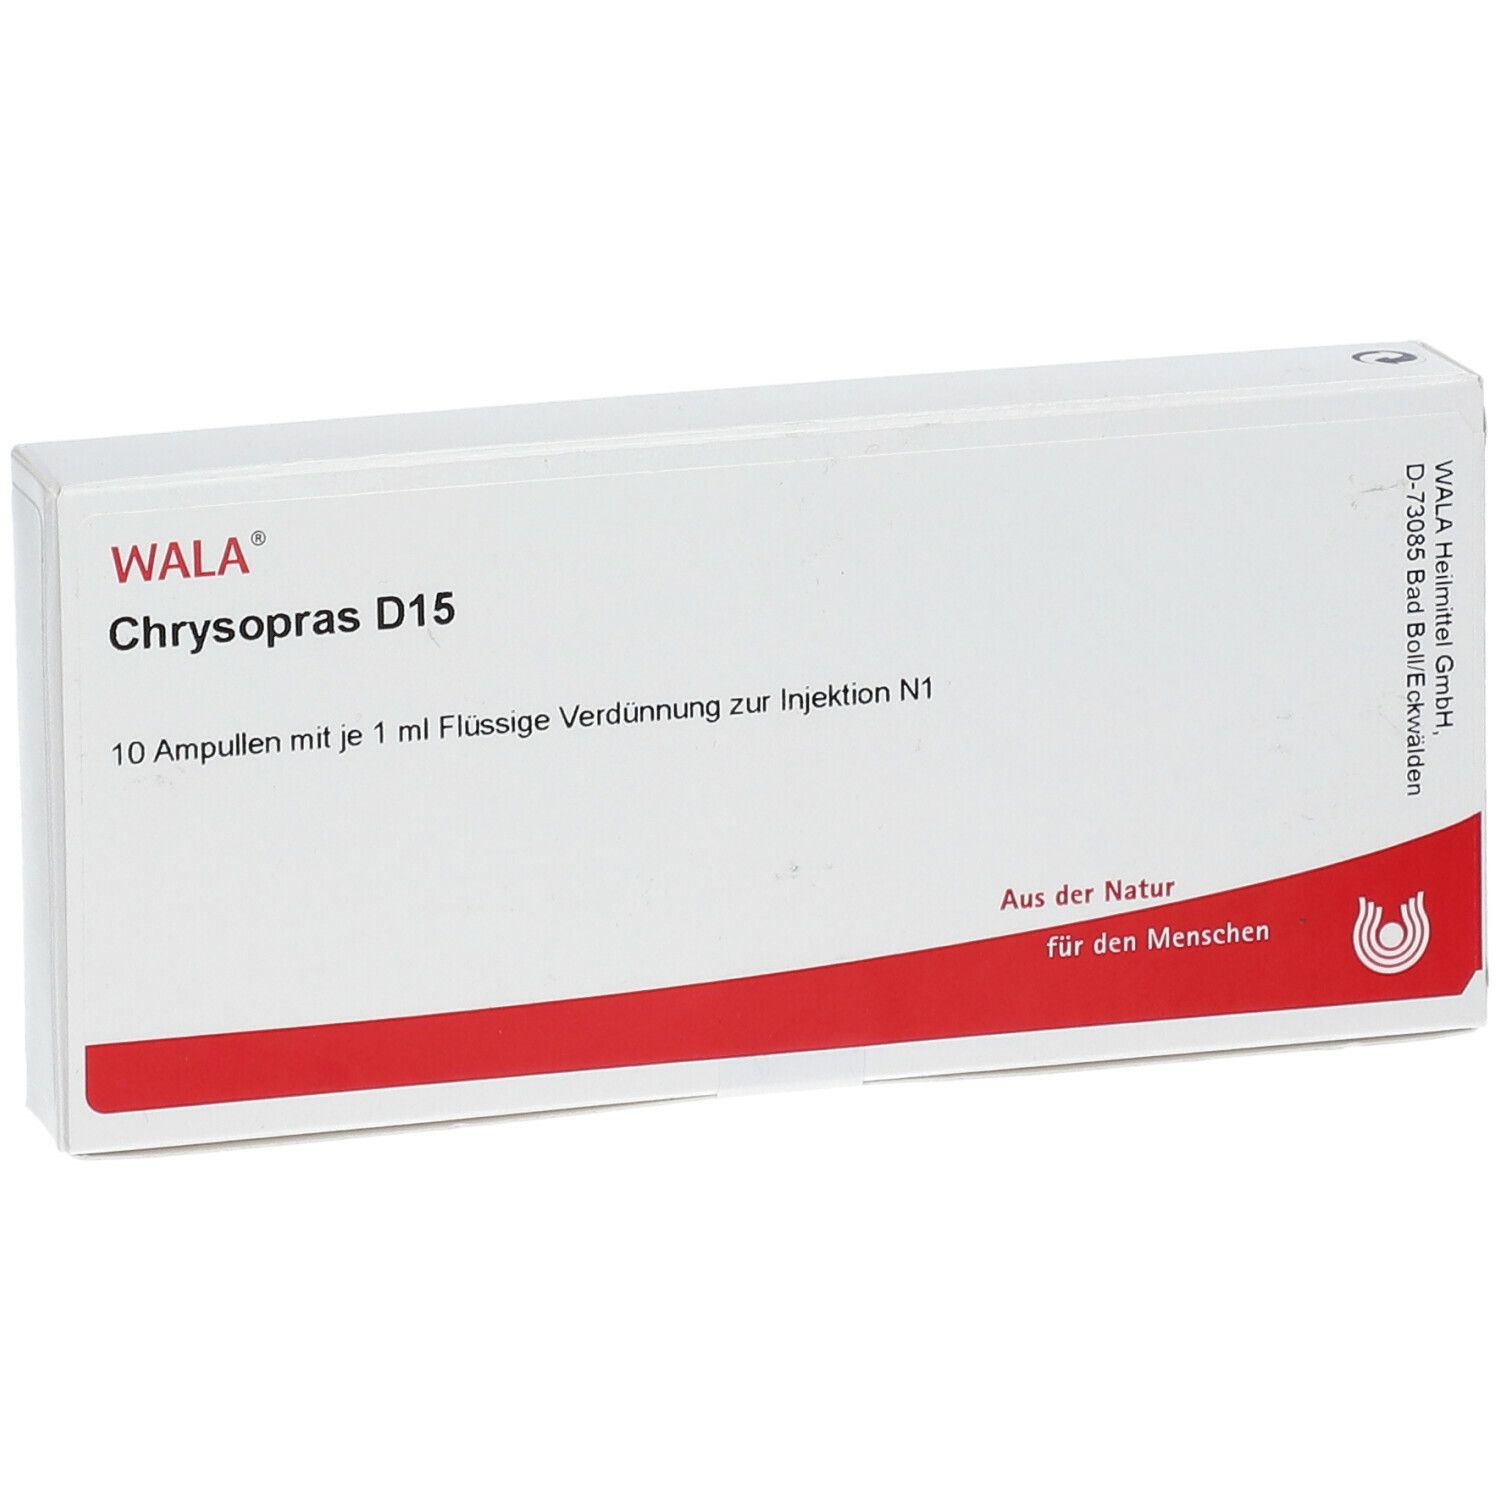 WALA® Chrysopras D 15